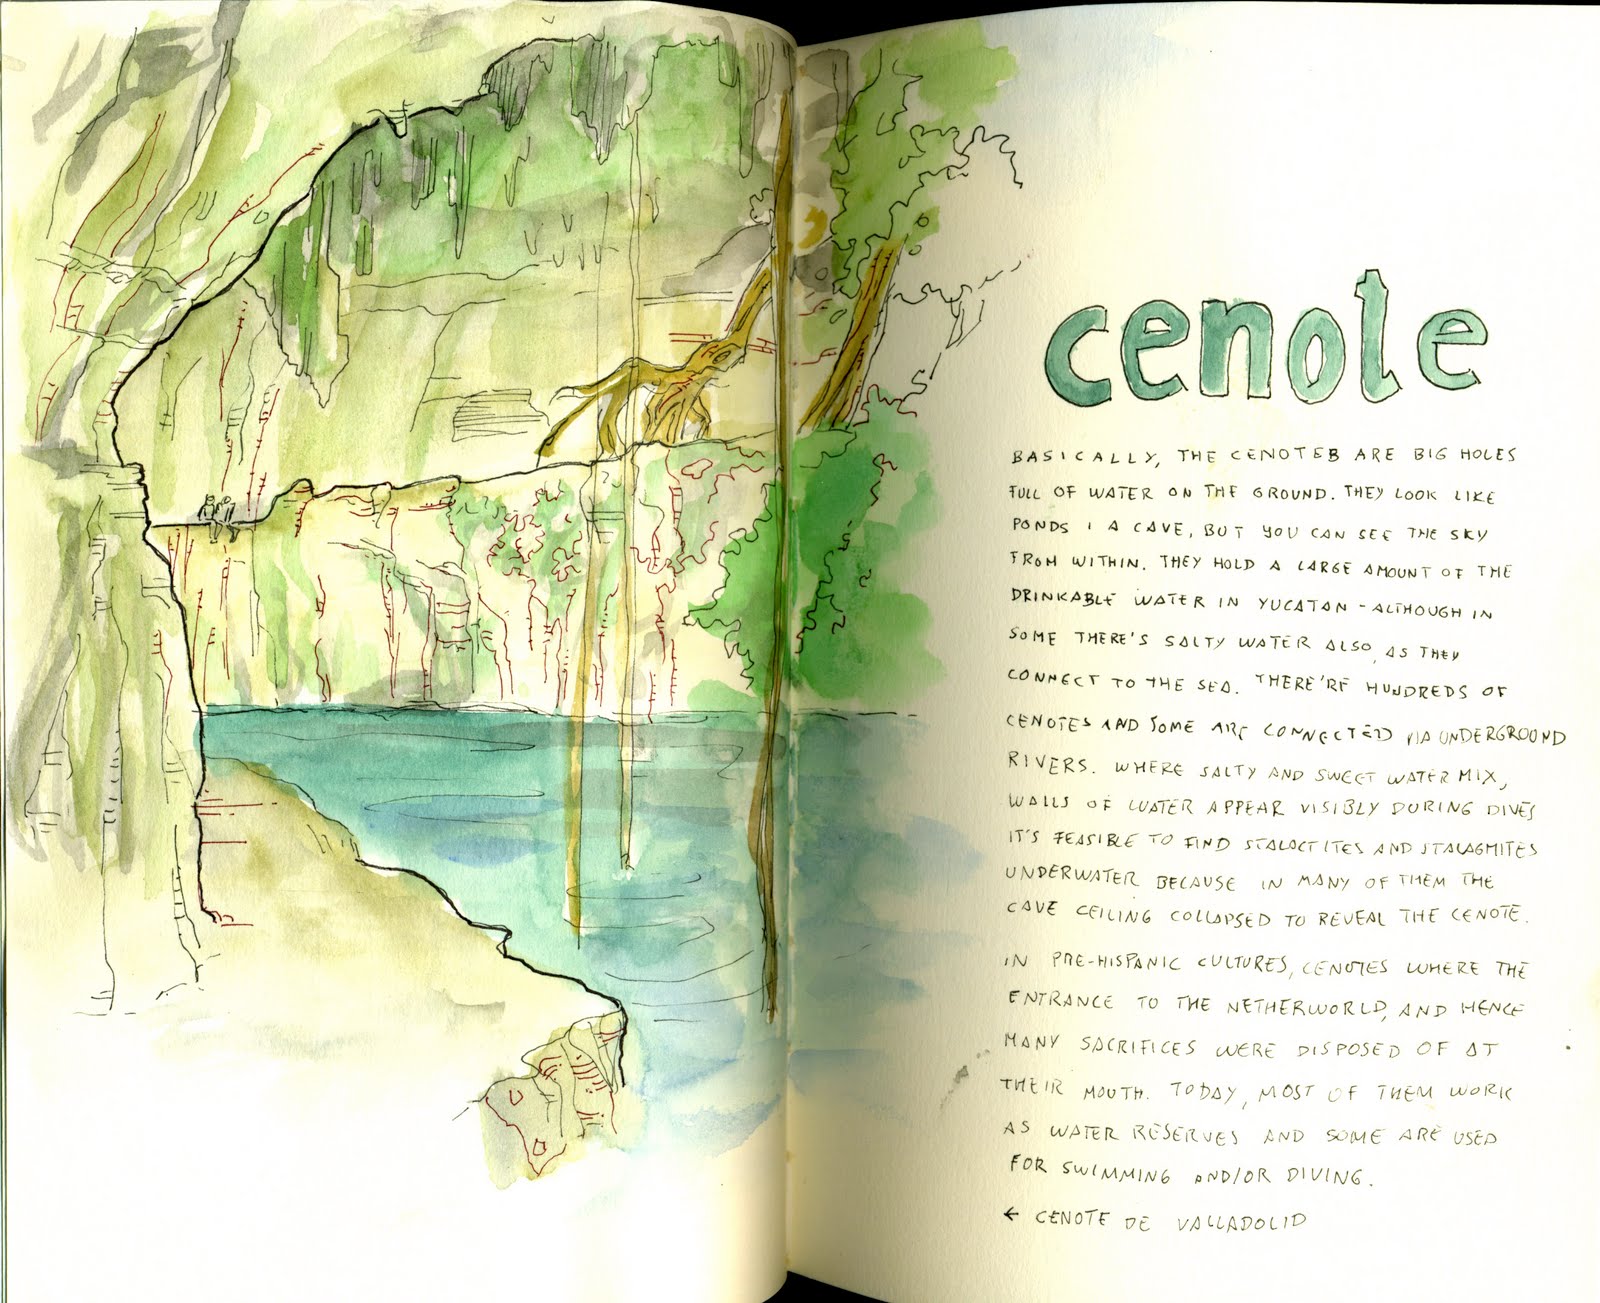 Urban Sketchers Spain. El mundo dibujo a dibujo.: Visitando los cenotes